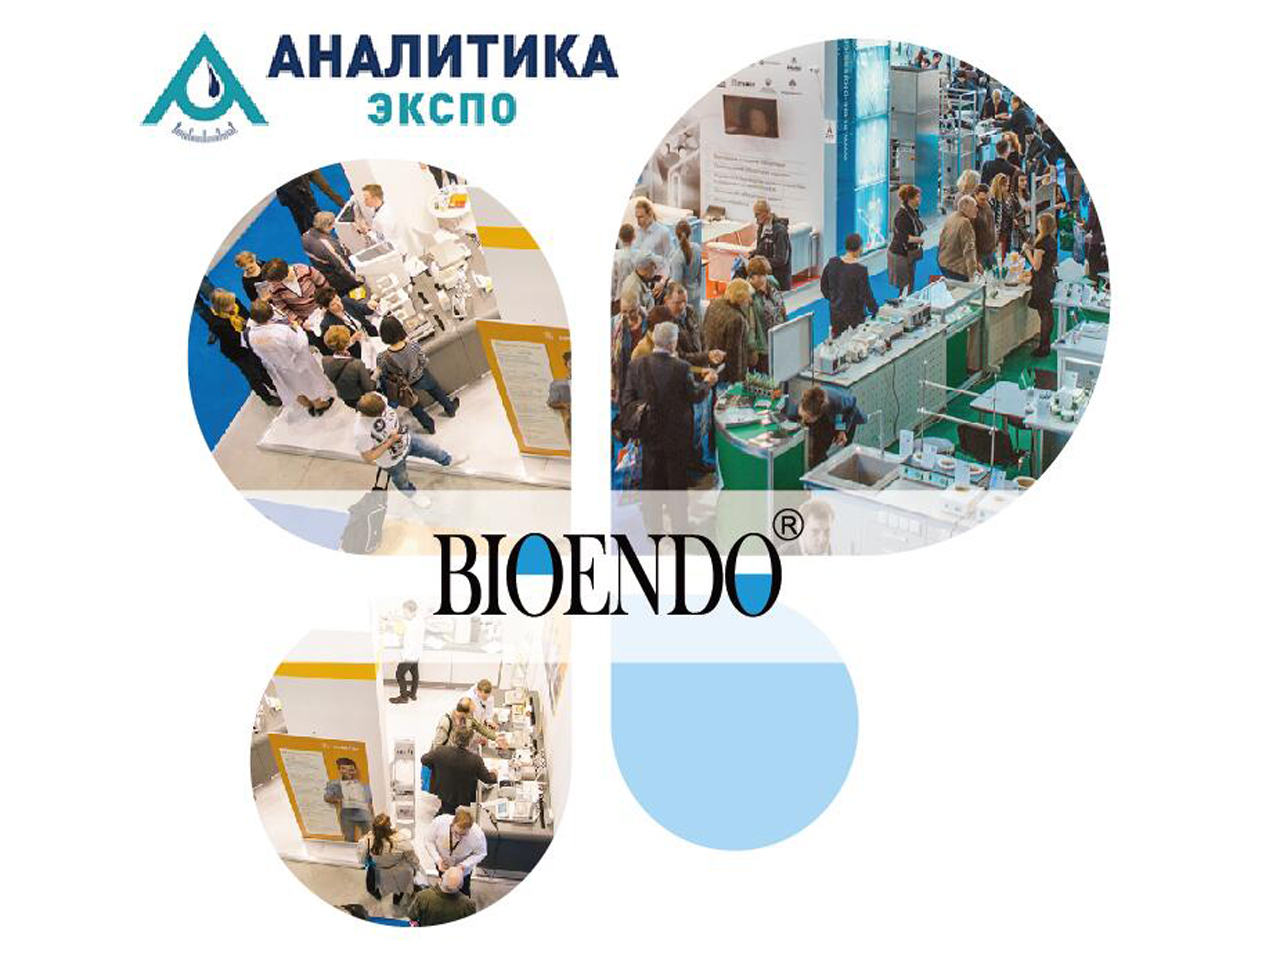 2019 Russland, Moskau, Laboratoire Instrument & Chemesch Reagenz Show